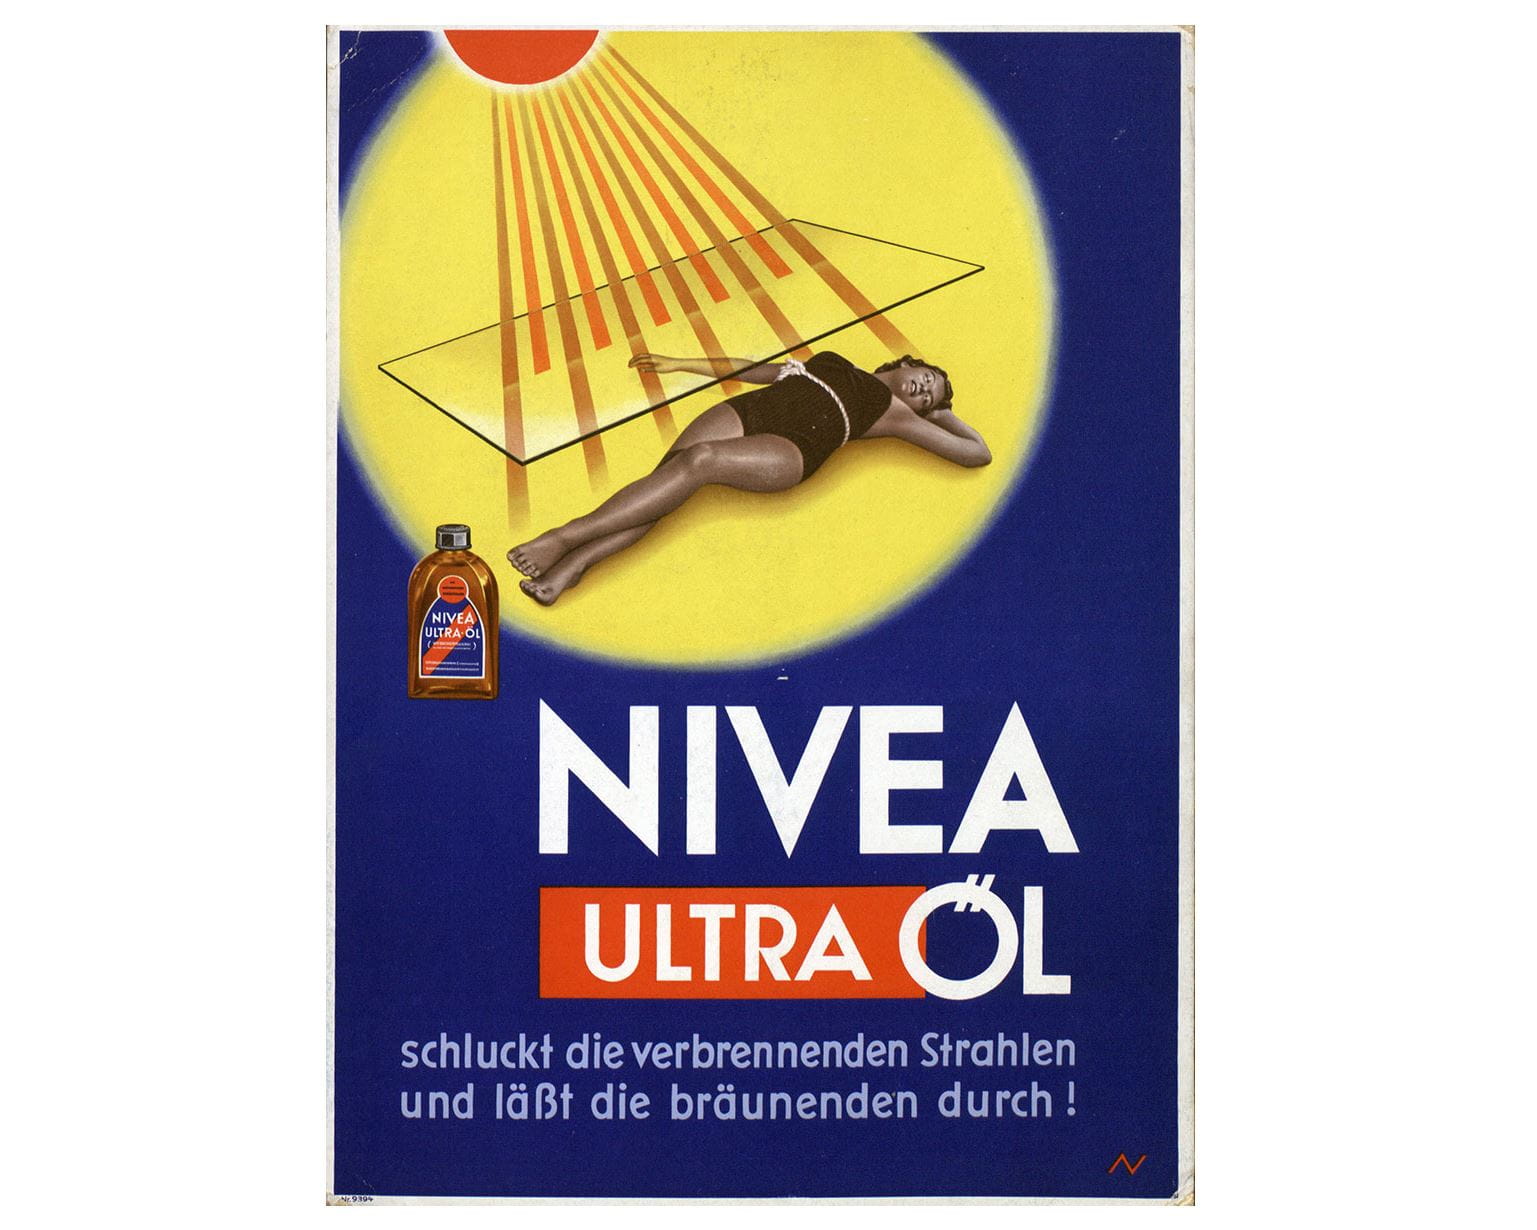 Cartaz publicitário NIVEA de 1930